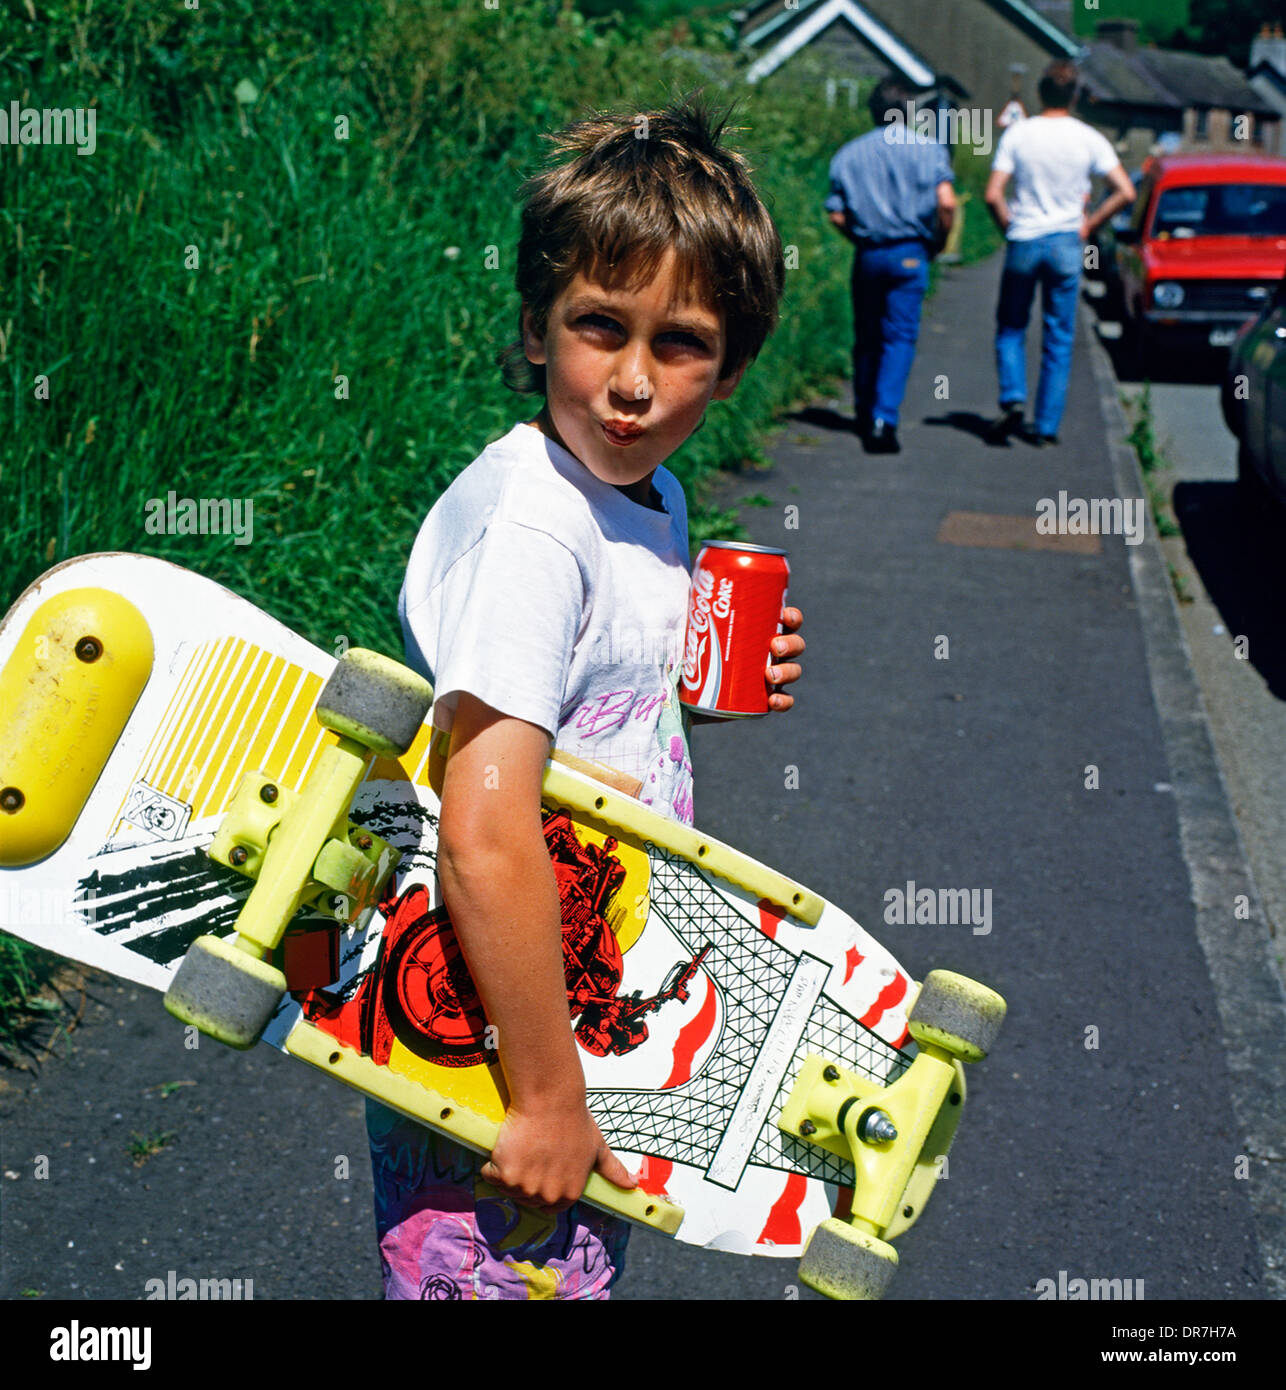 80s skateboard immagini e fotografie stock ad alta risoluzione - Alamy